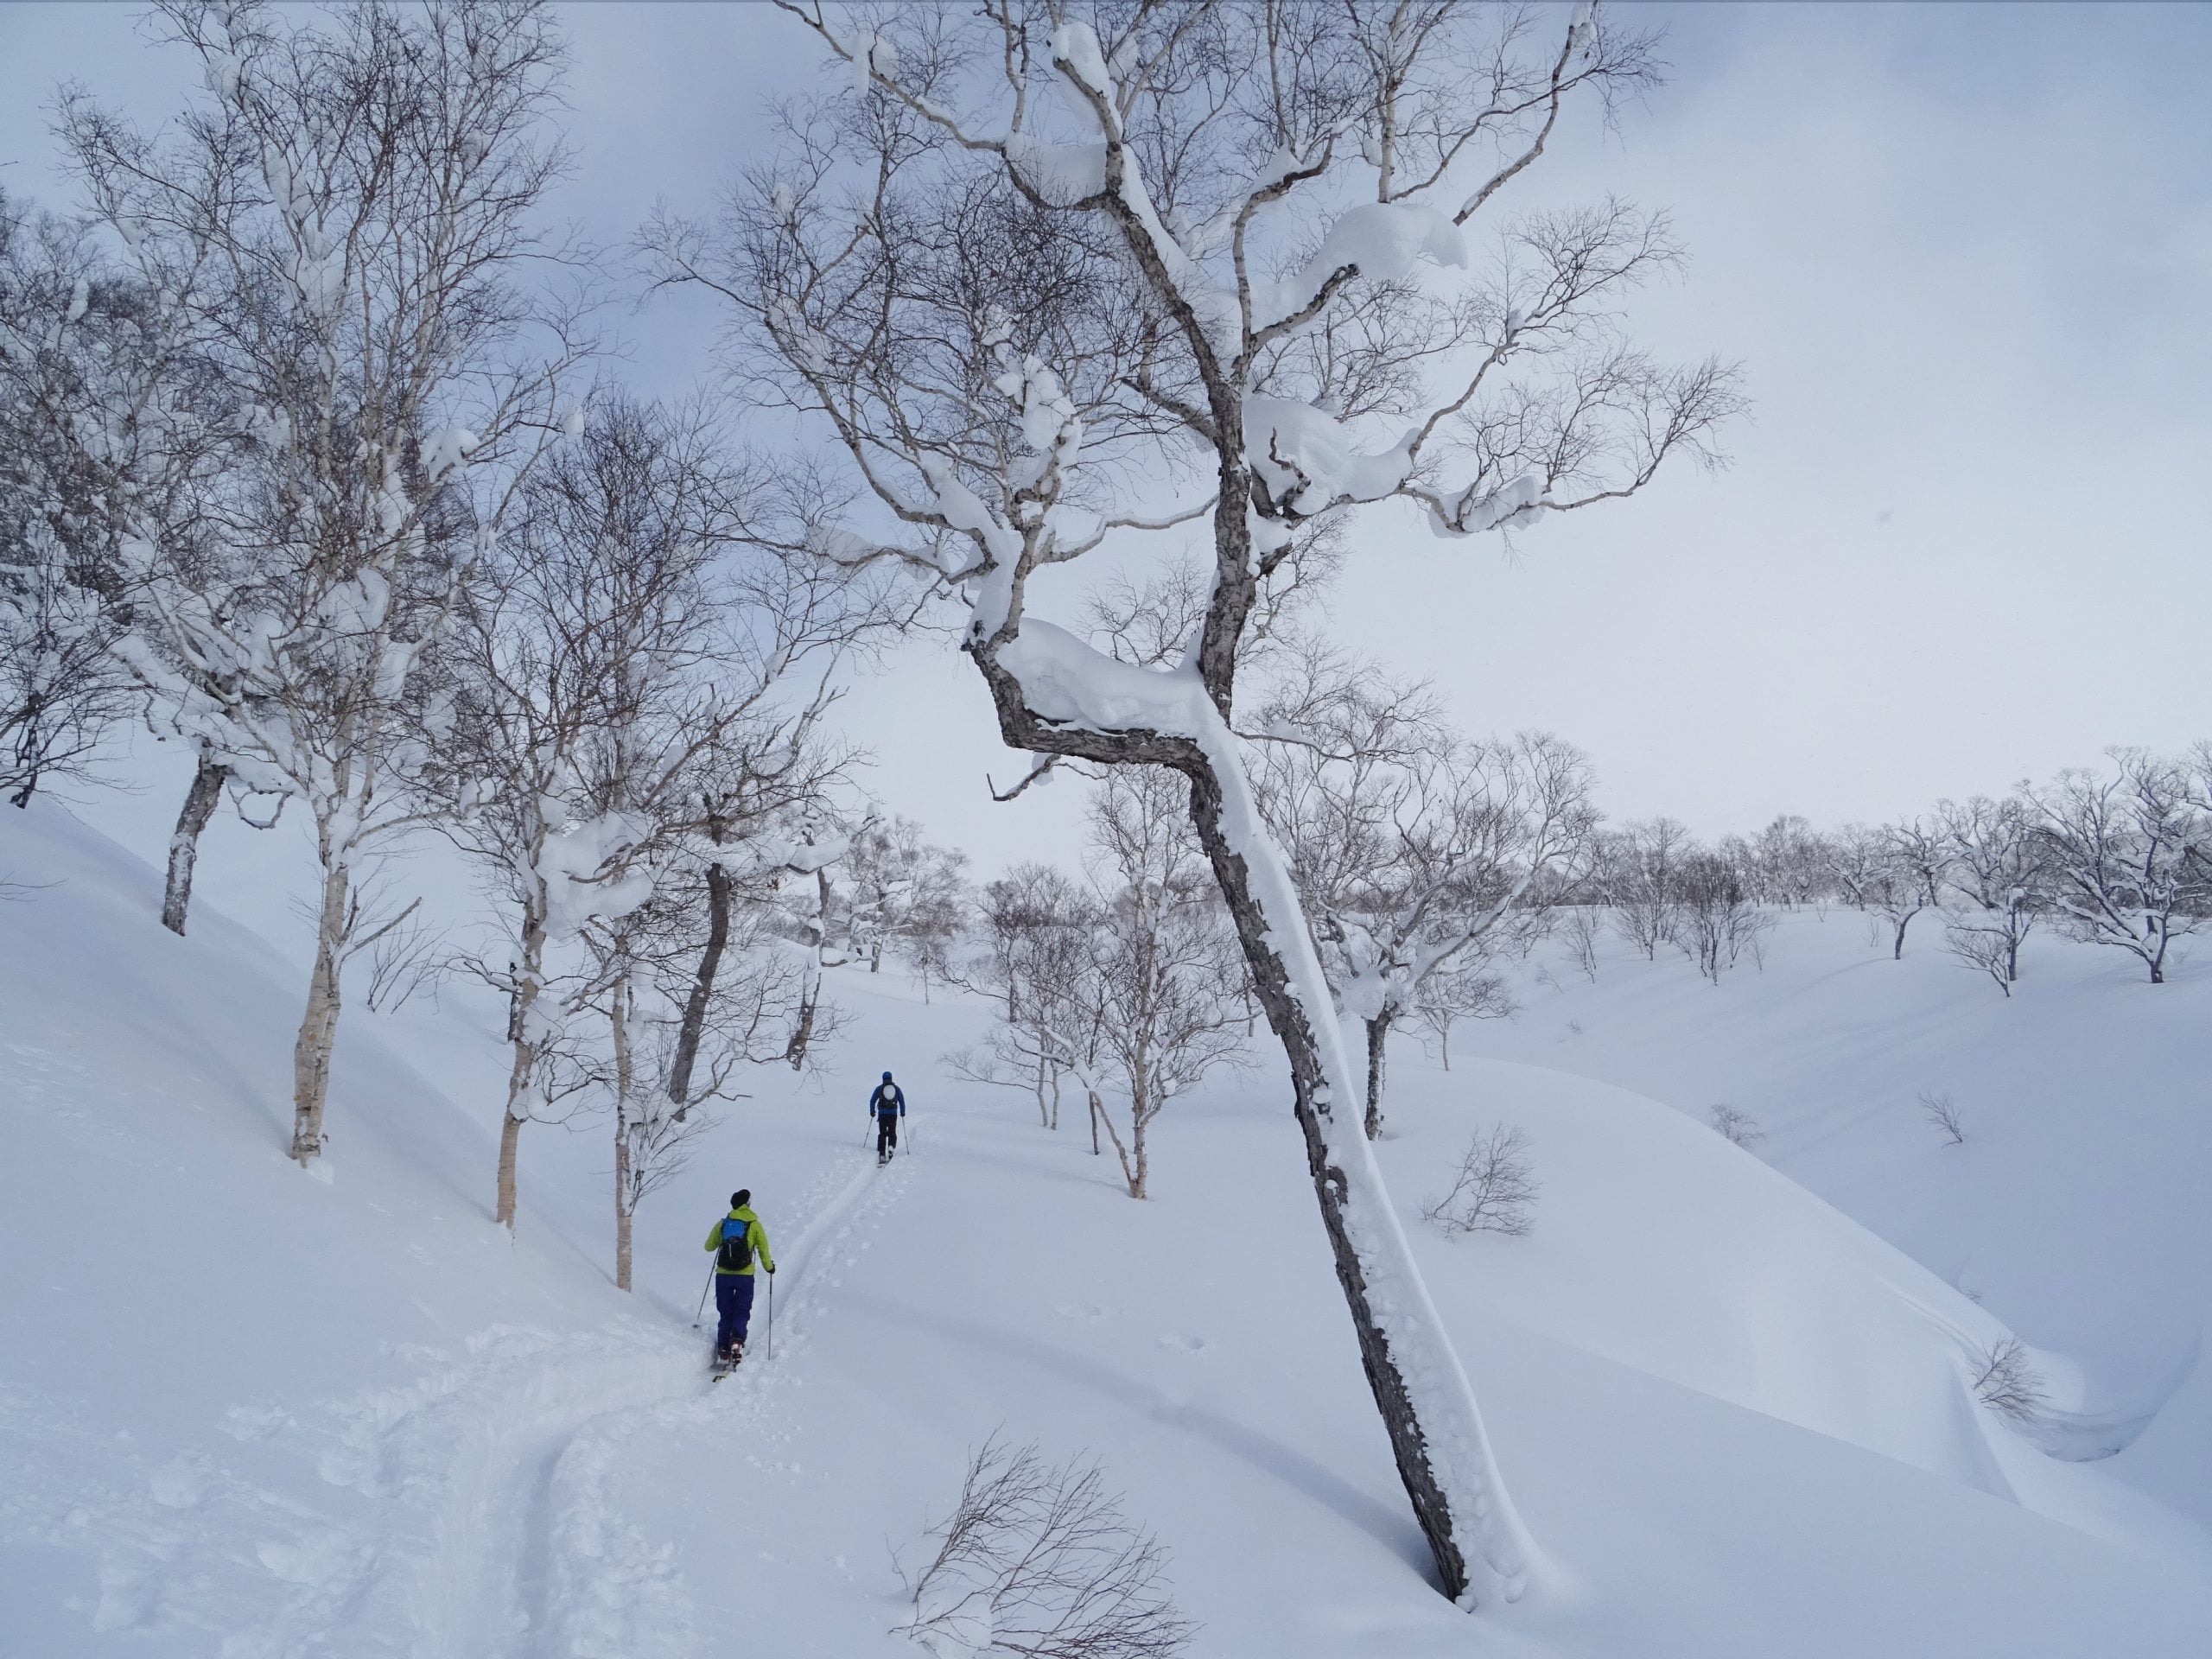 Japón, esquí de montaña en la tierra del sol naciente